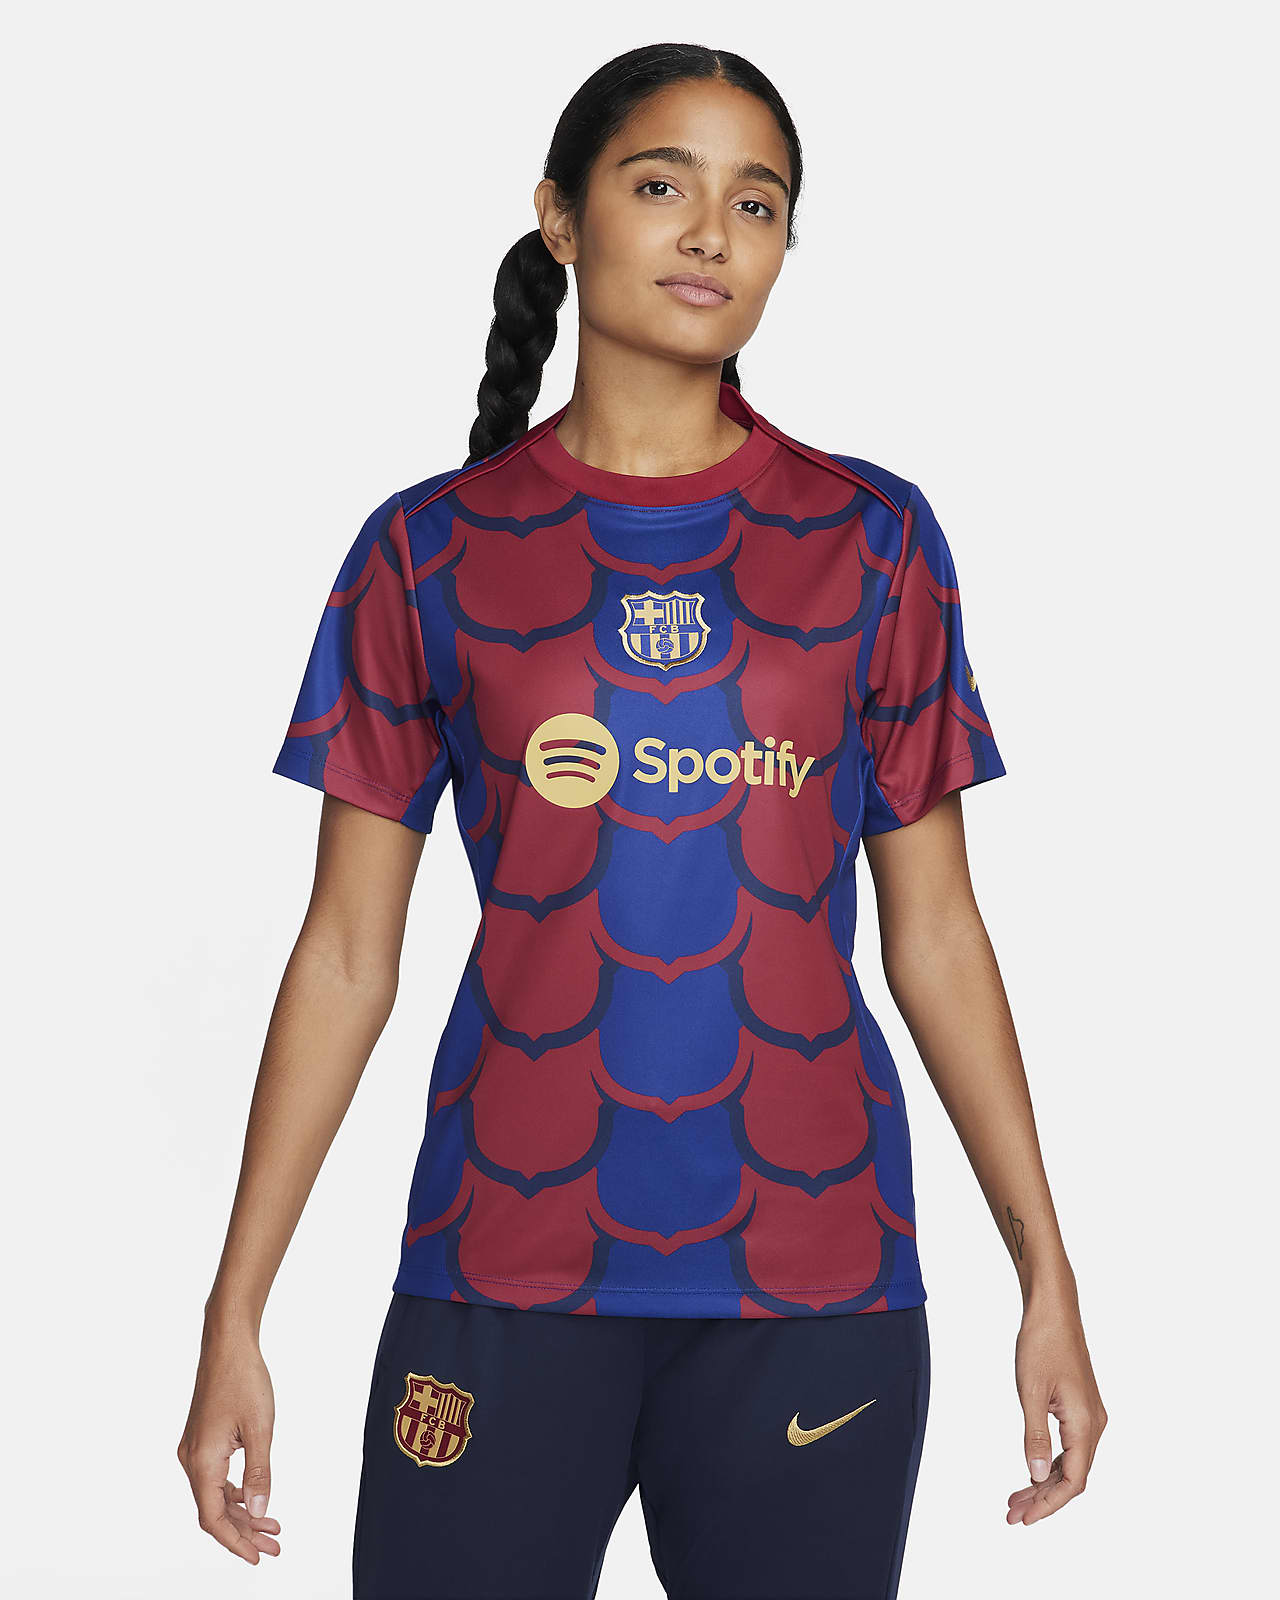 FC Barcelona Academy Pro Nike Dri-FIT mérkőzés előtti női futballfelső